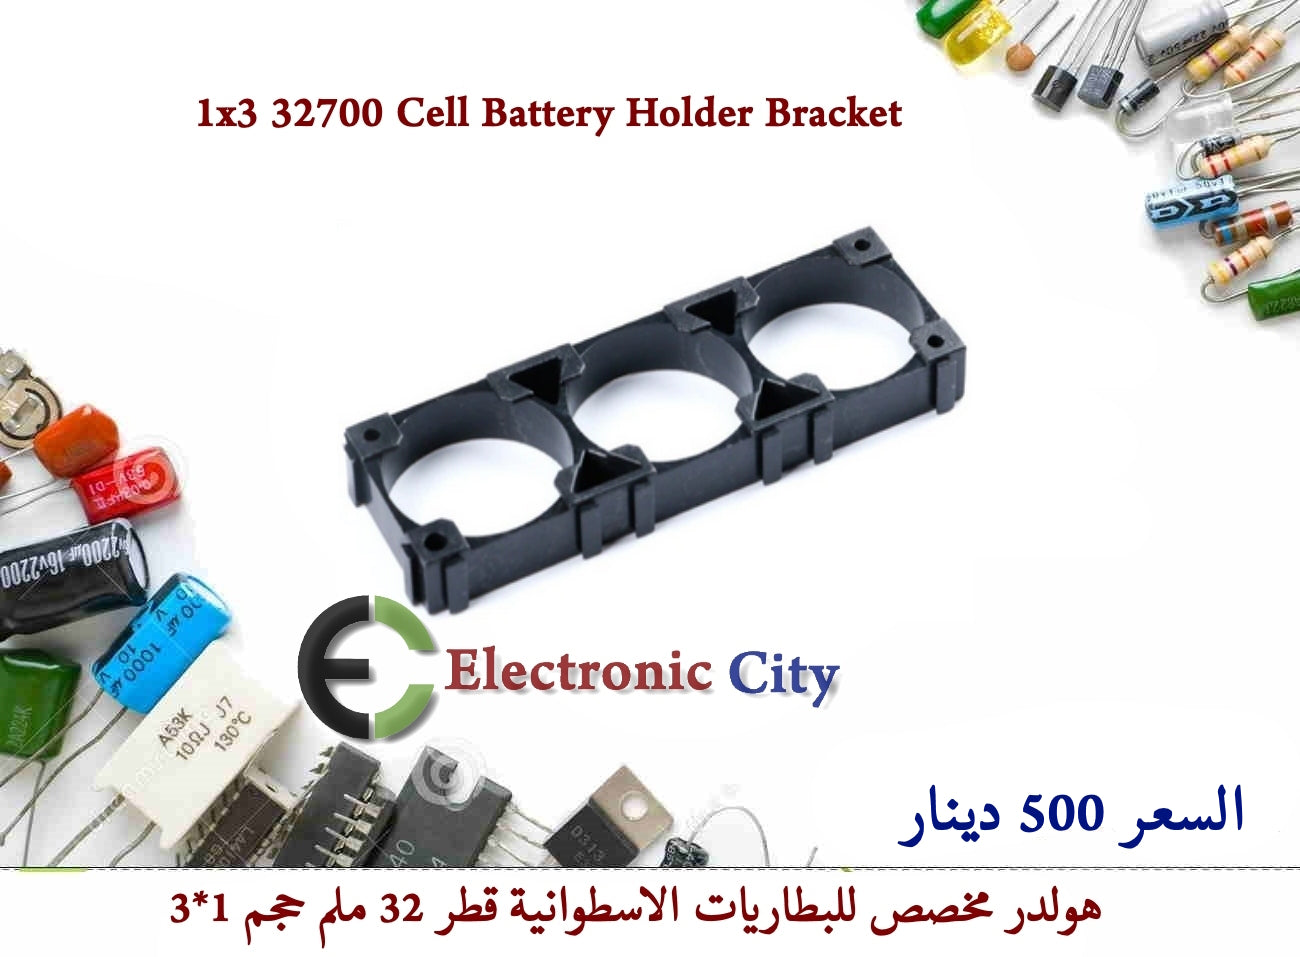 1x 32700 Cell Battery Holder Bracket